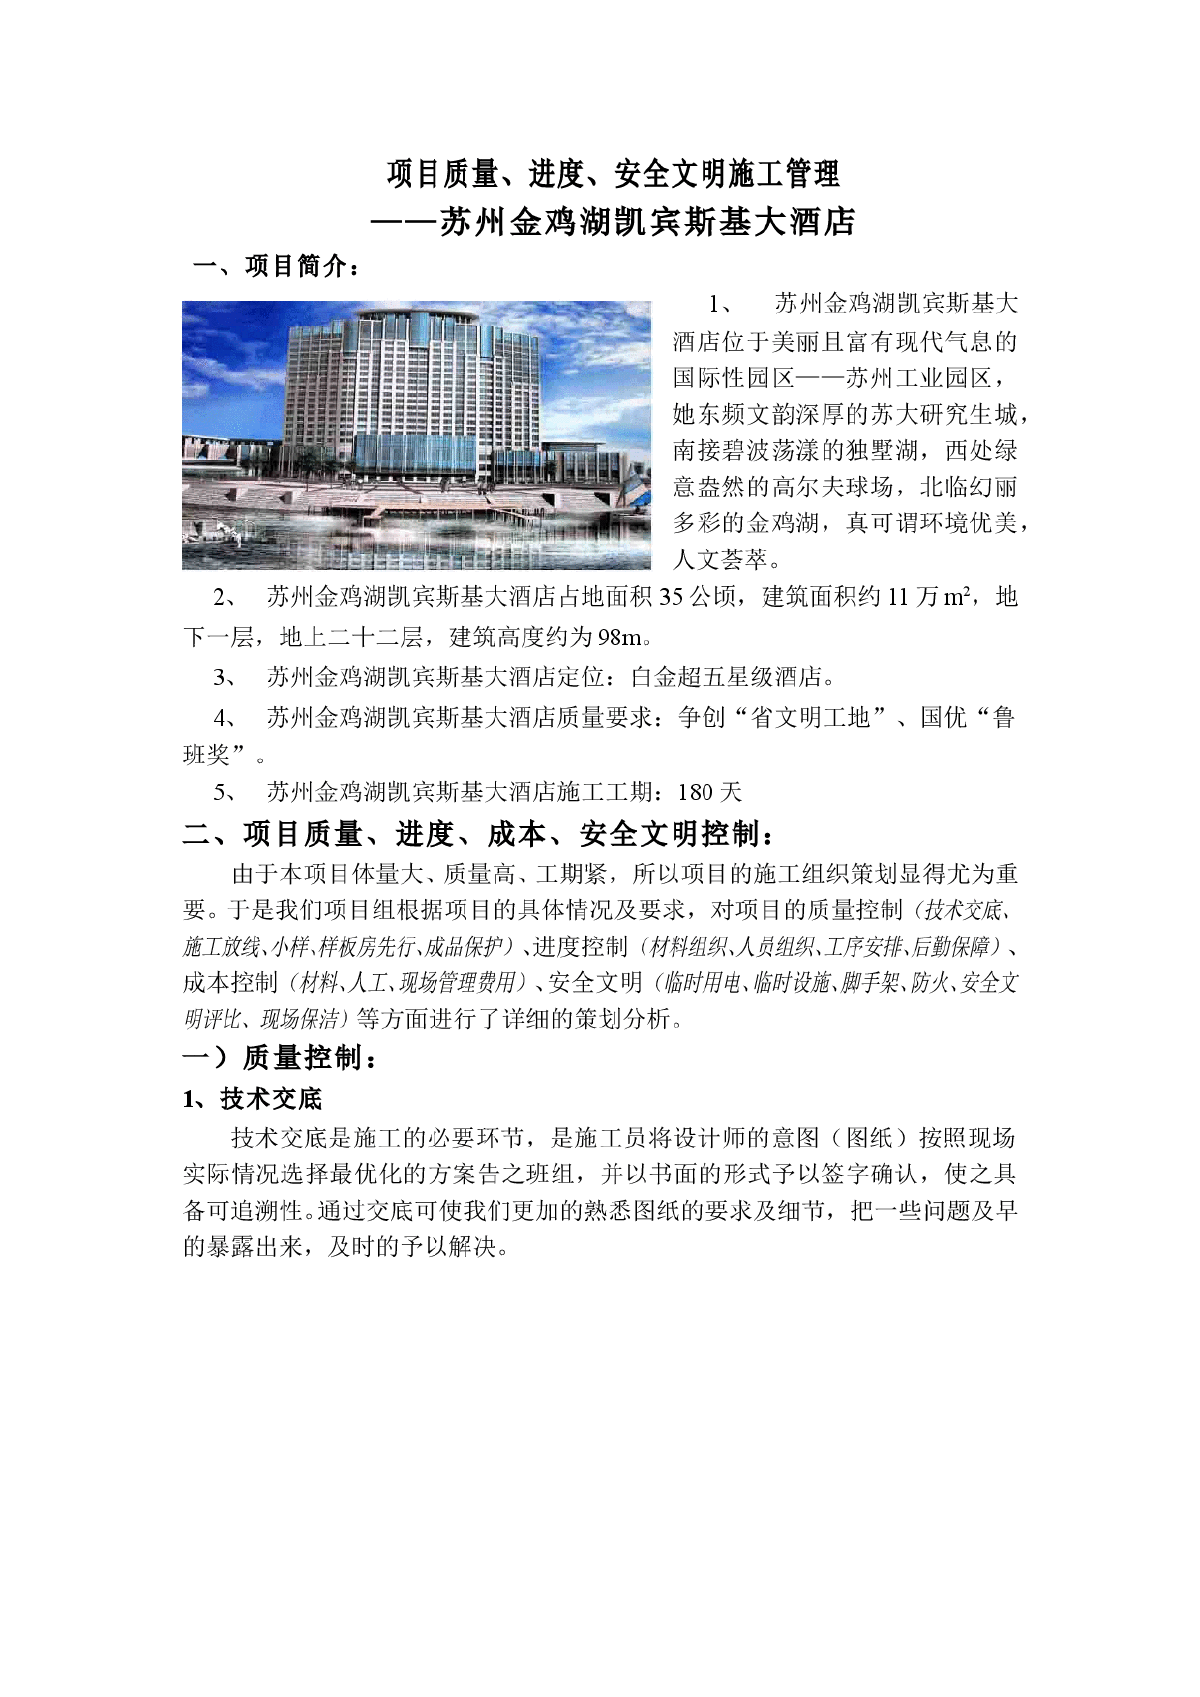 【苏州】凯宾斯基大酒店项目质量、安全文明施工管理-图一